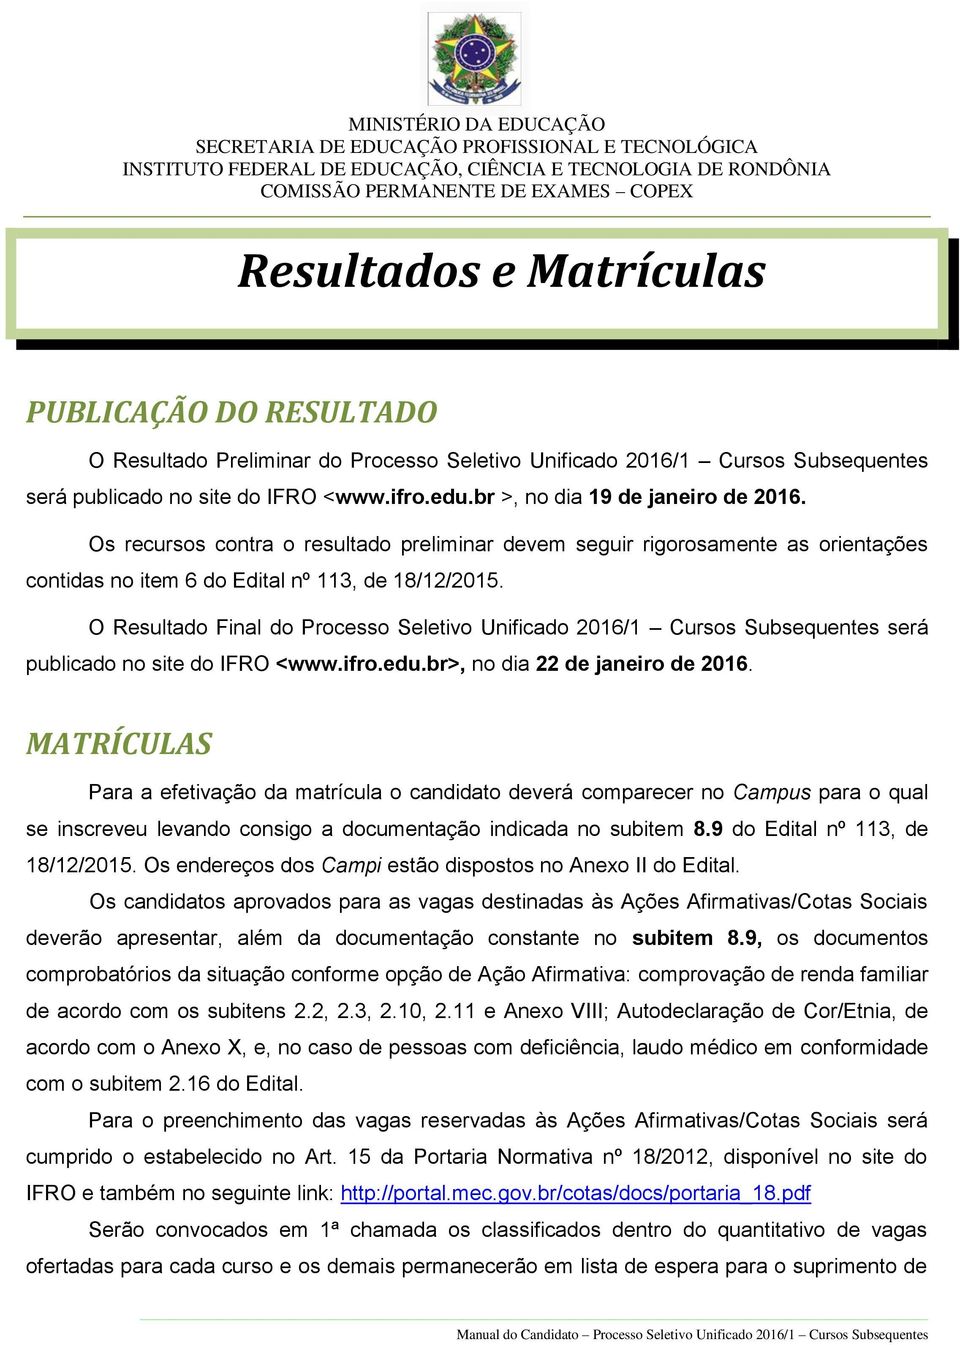 O Resultado Final do Processo Seletivo Unificado 2016/1 Cursos Subsequentes será publicado no site do IFRO <www.ifro.edu.br>, no dia 22 de janeiro de 2016.